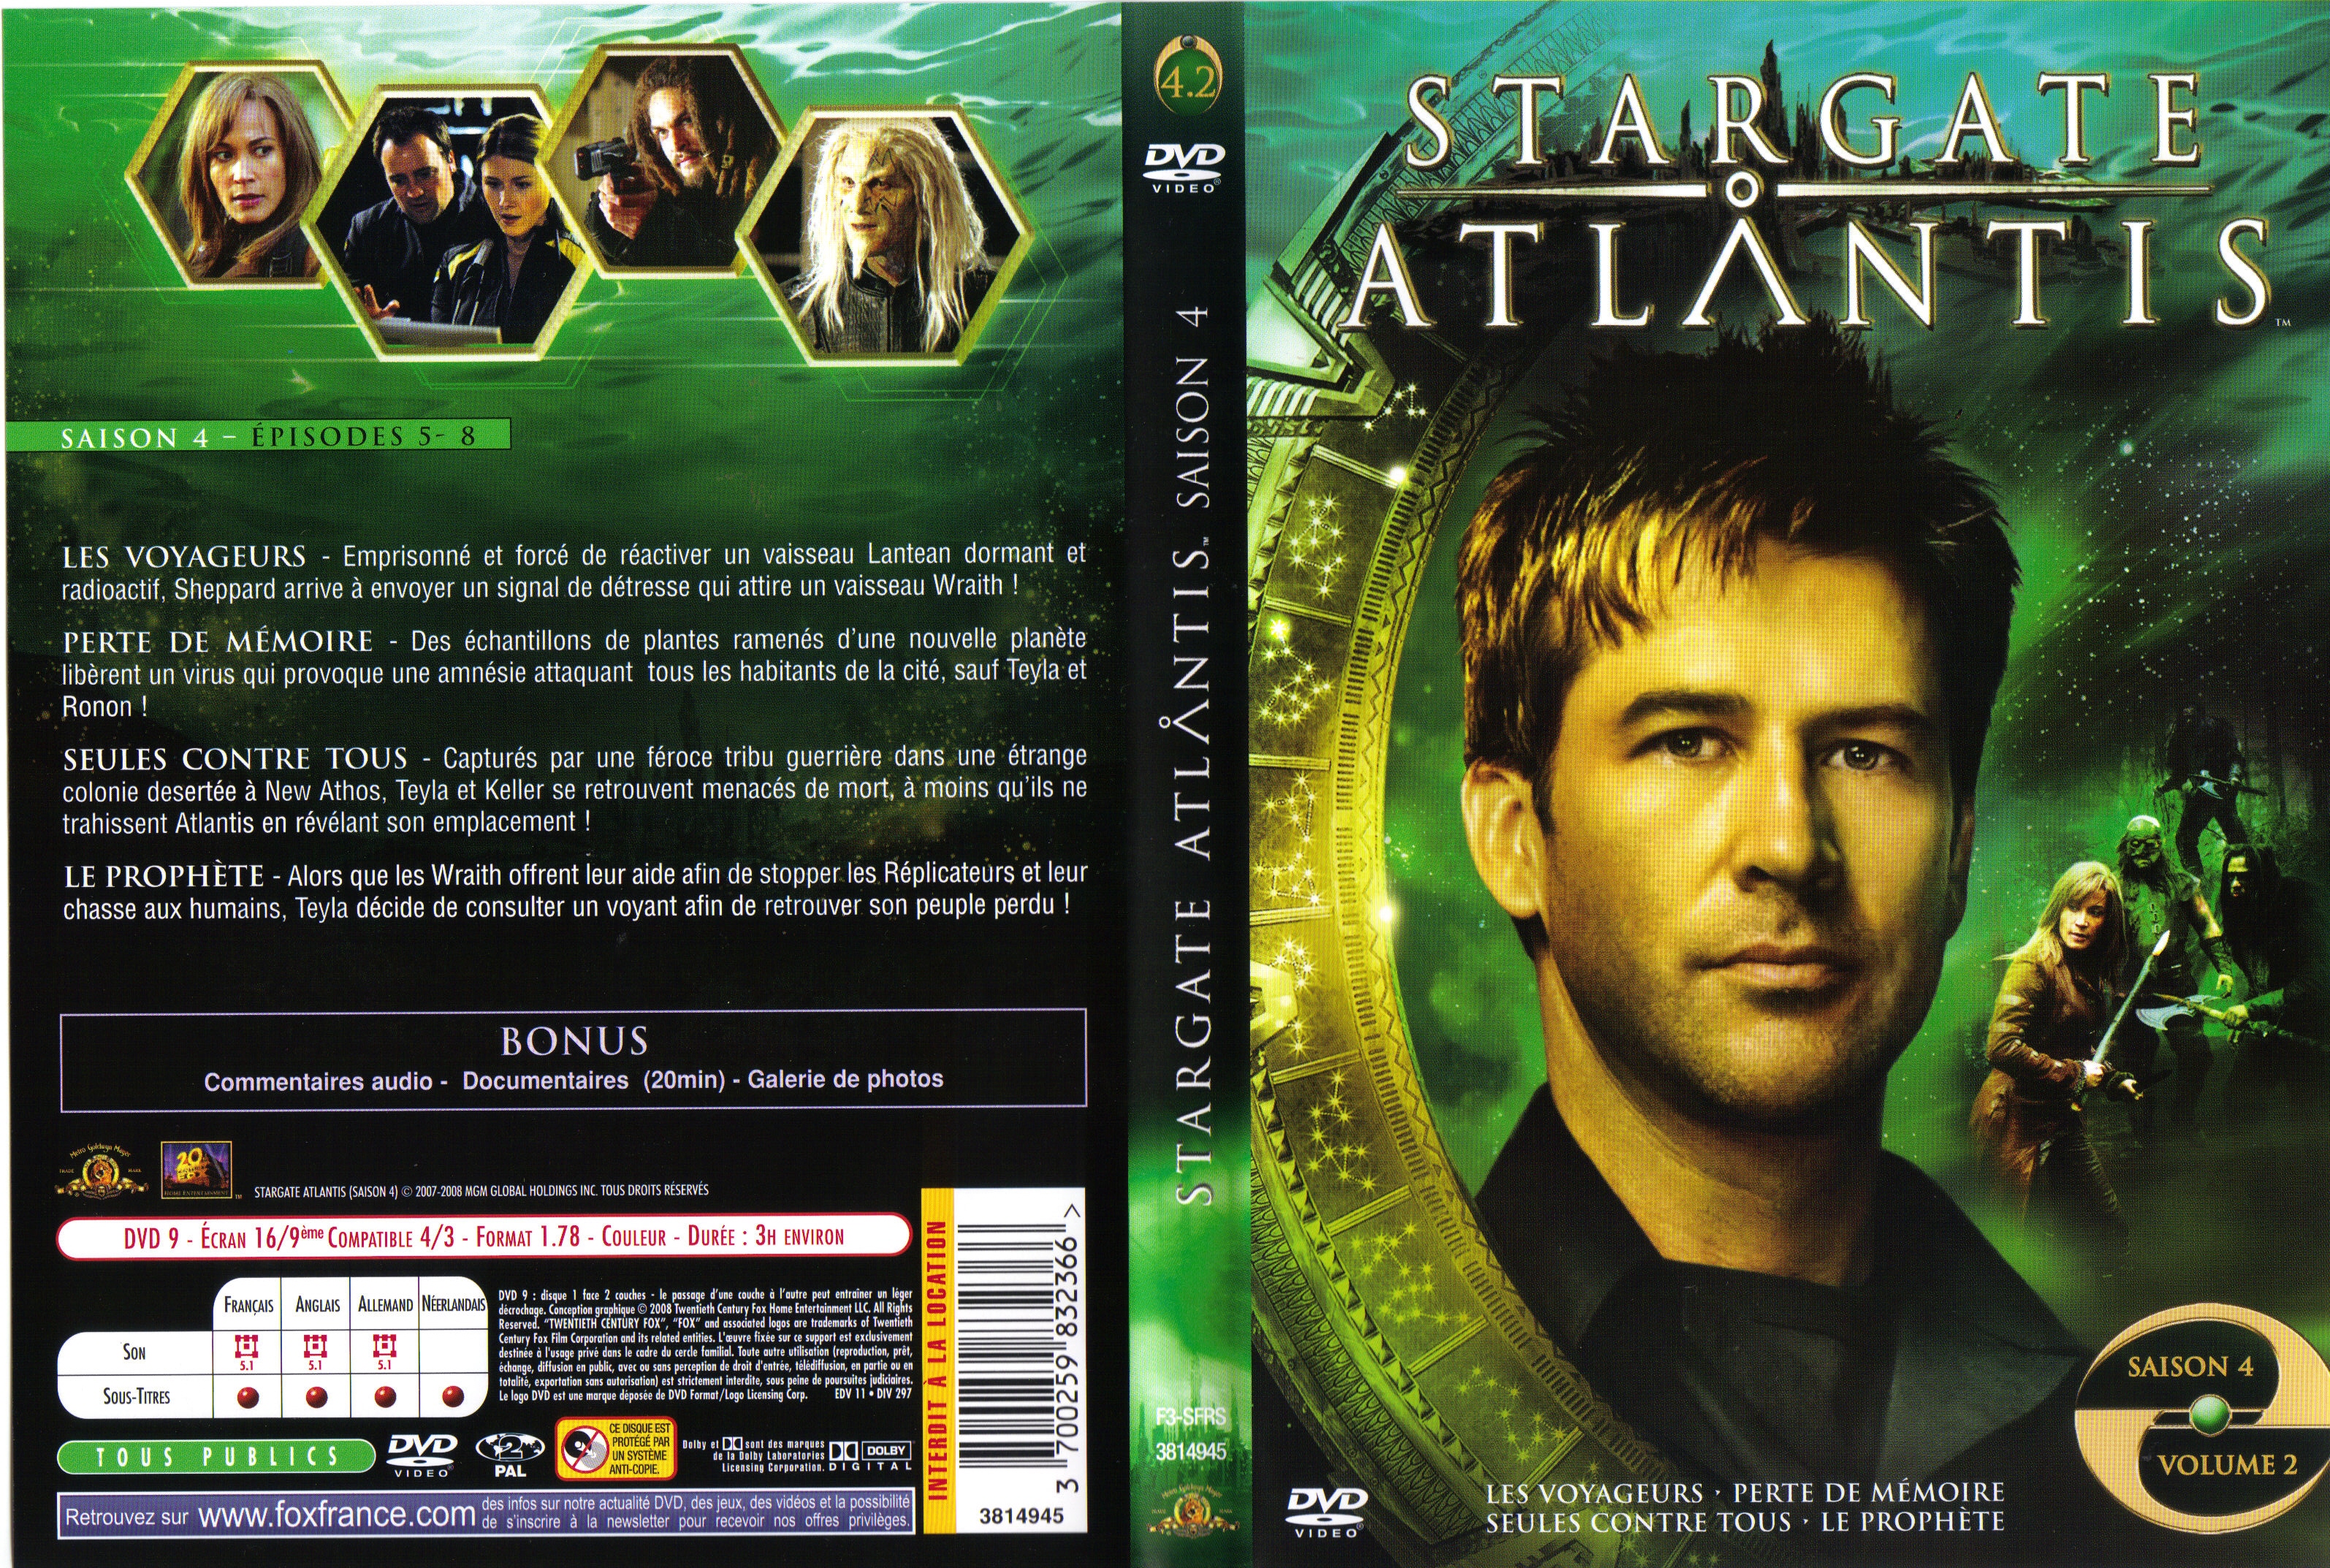 Jaquette DVD Stargate Atlantis Saison 4 vol 2